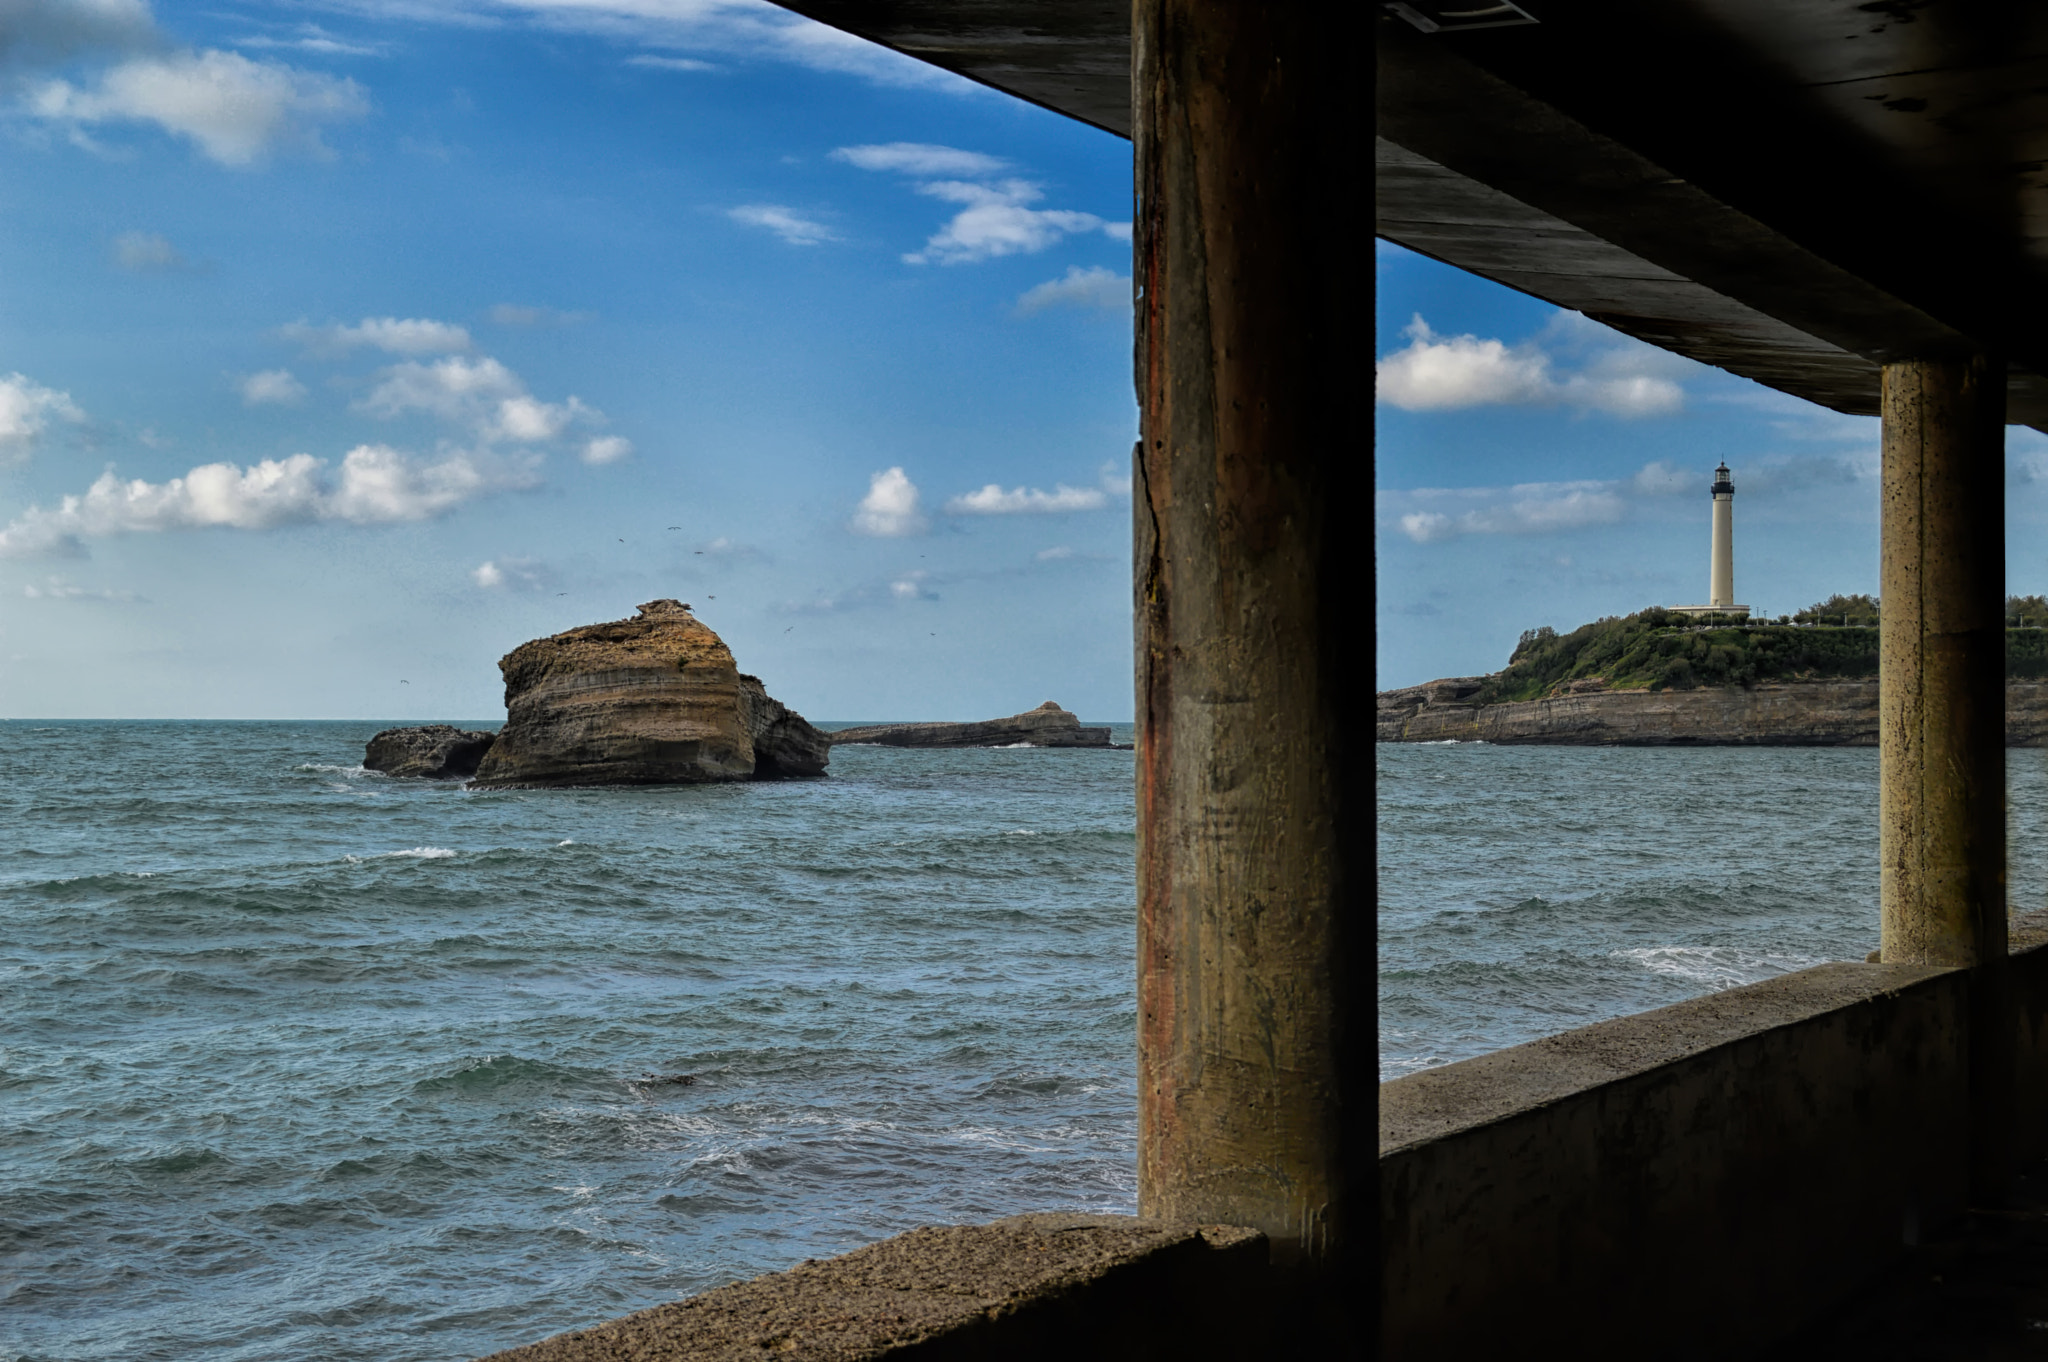 Nikon D3200 sample photo. Marina con columnas - seascape with columns photography